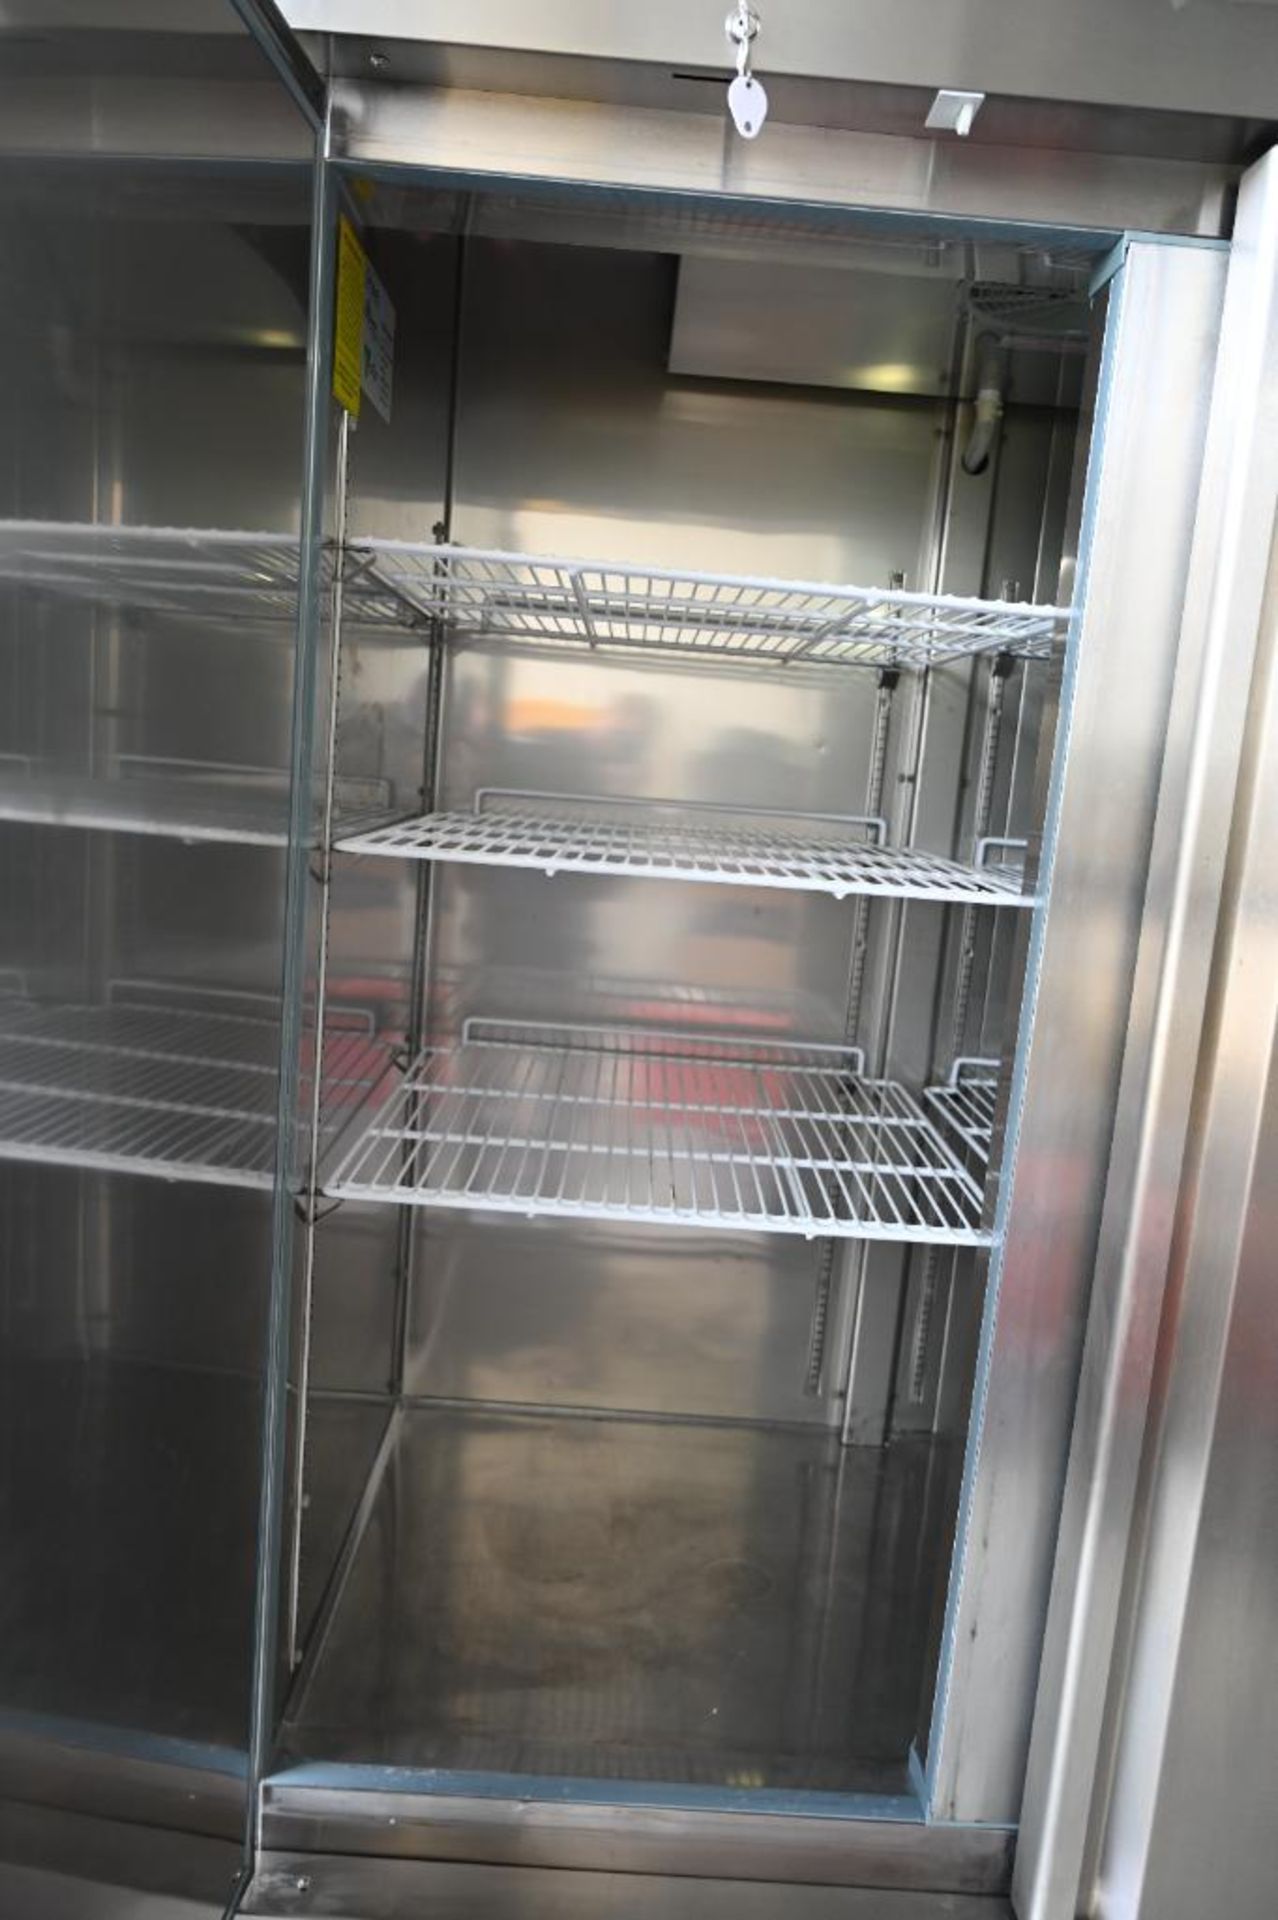 Empura model EKB54R Stainless Commercial Refrigerator - Image 7 of 14